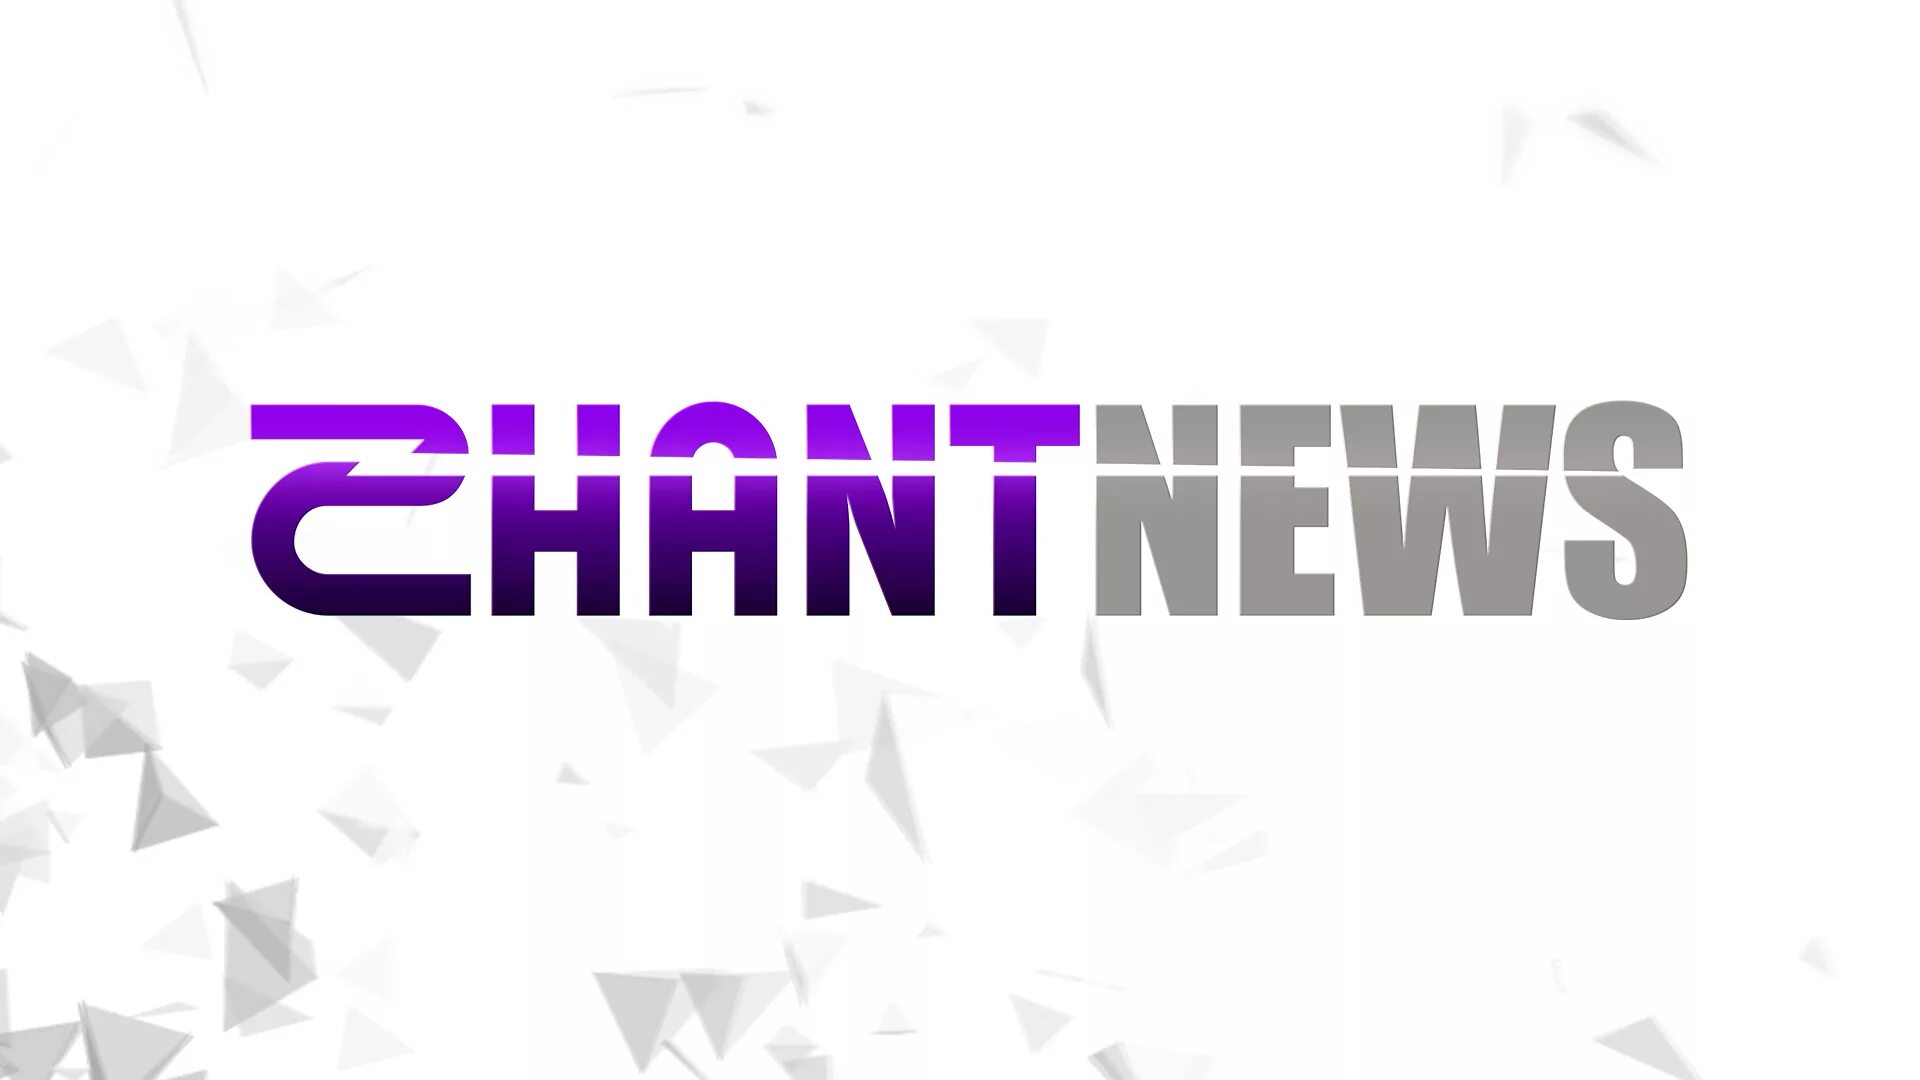 Канал Шант премиум. Логотип канала Shant News.